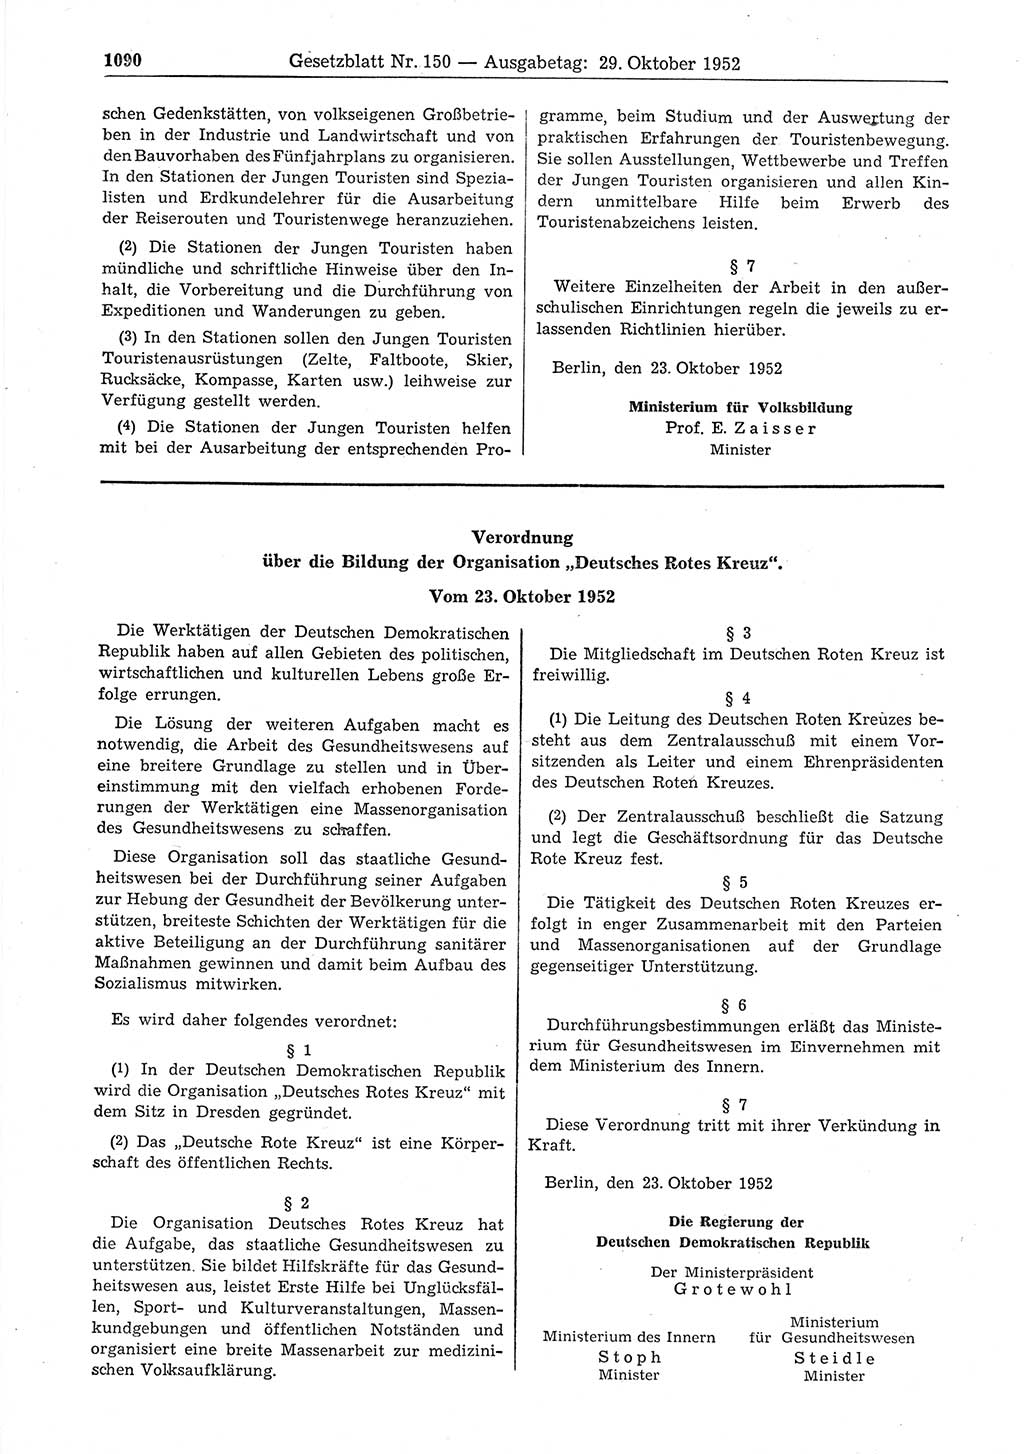 Gesetzblatt (GBl.) der Deutschen Demokratischen Republik (DDR) 1952, Seite 1090 (GBl. DDR 1952, S. 1090)